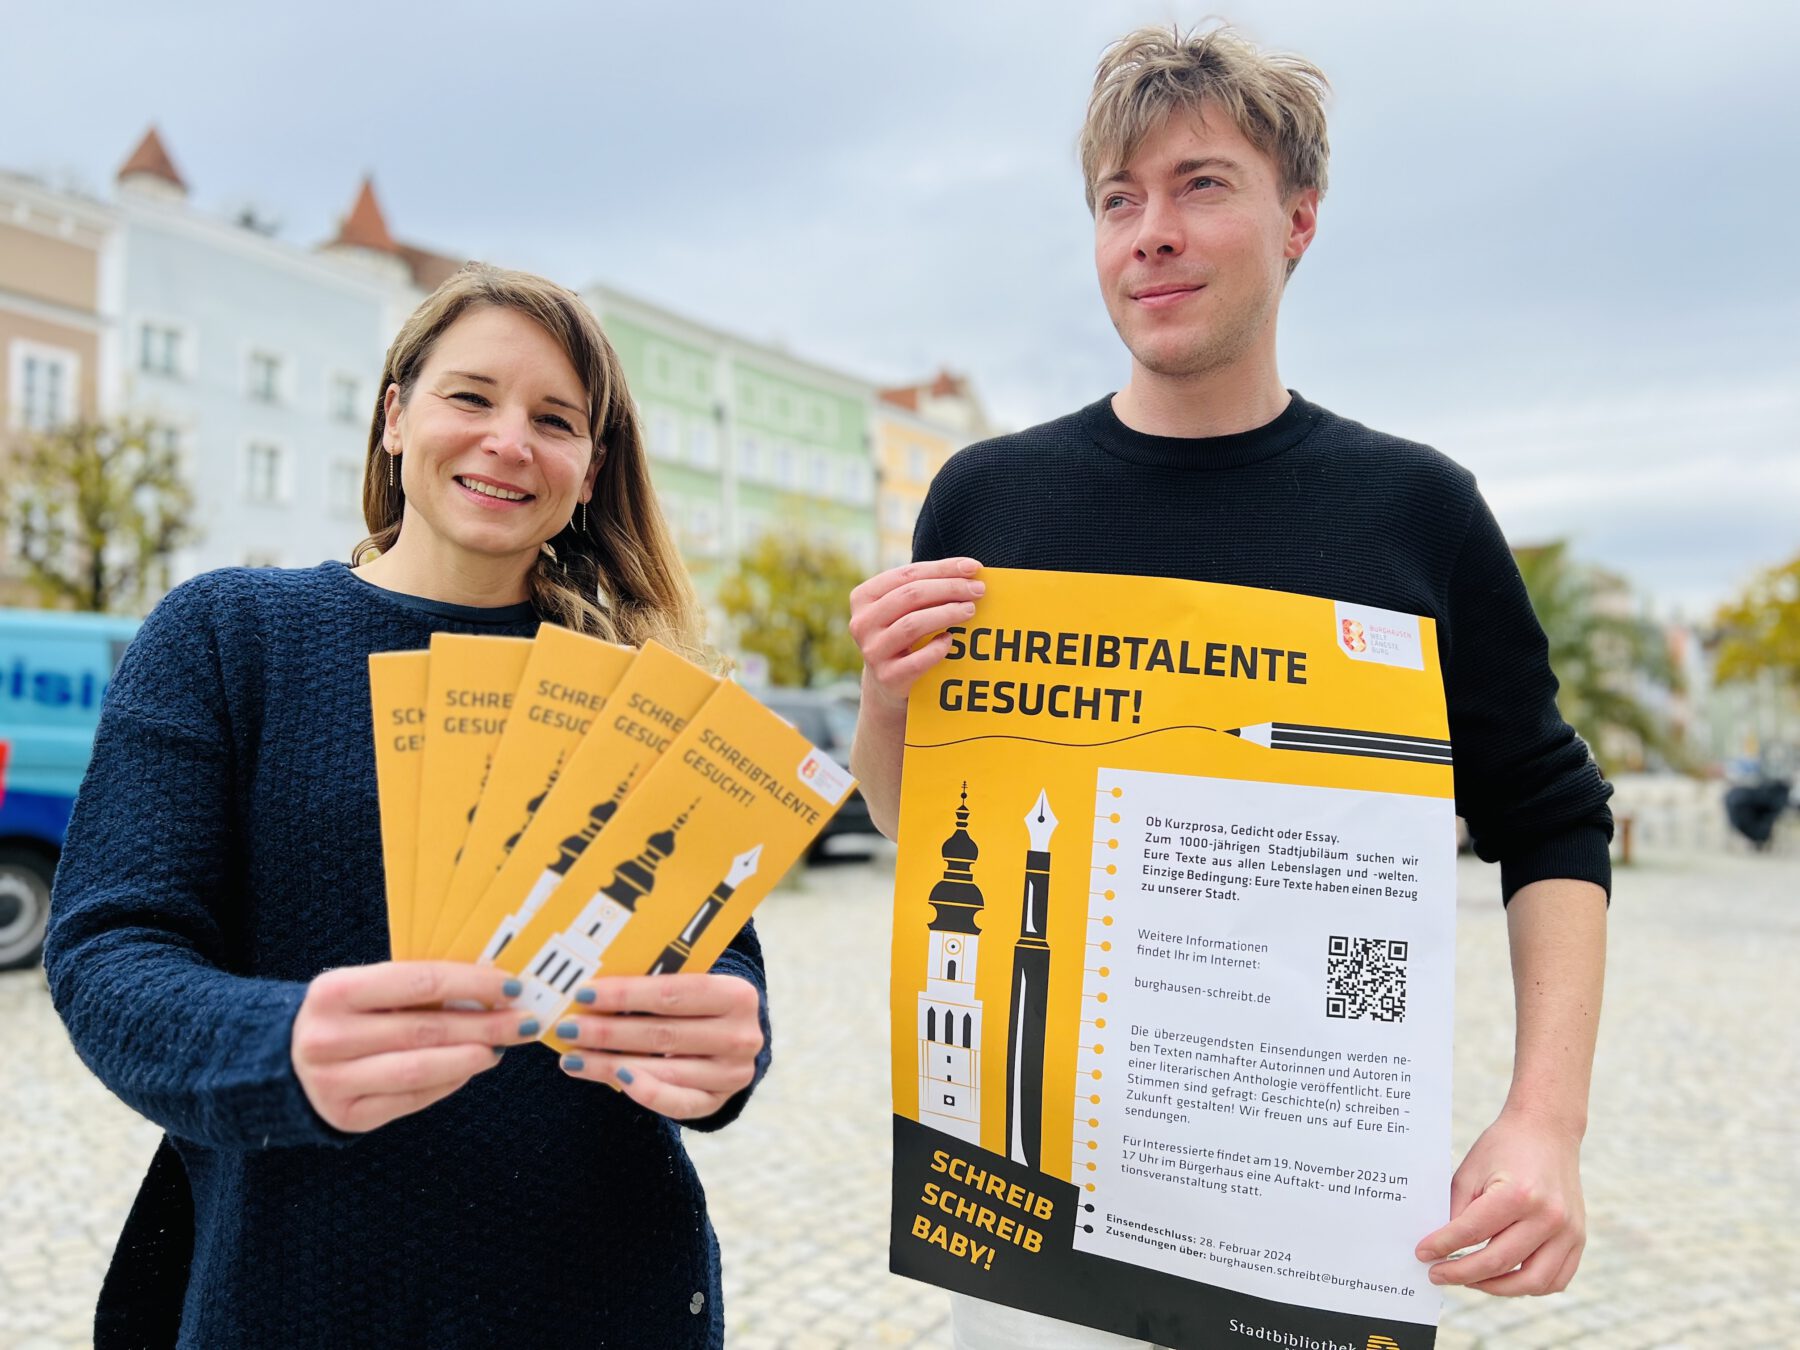 Die Stadt hofft auf viele Stadtschreiber, die gemeinsam ein Buch herausbringen möchten. Ein Projekt zur 1.000-Jahr-Feier der Stadt Burghausen im Jahr 2025.